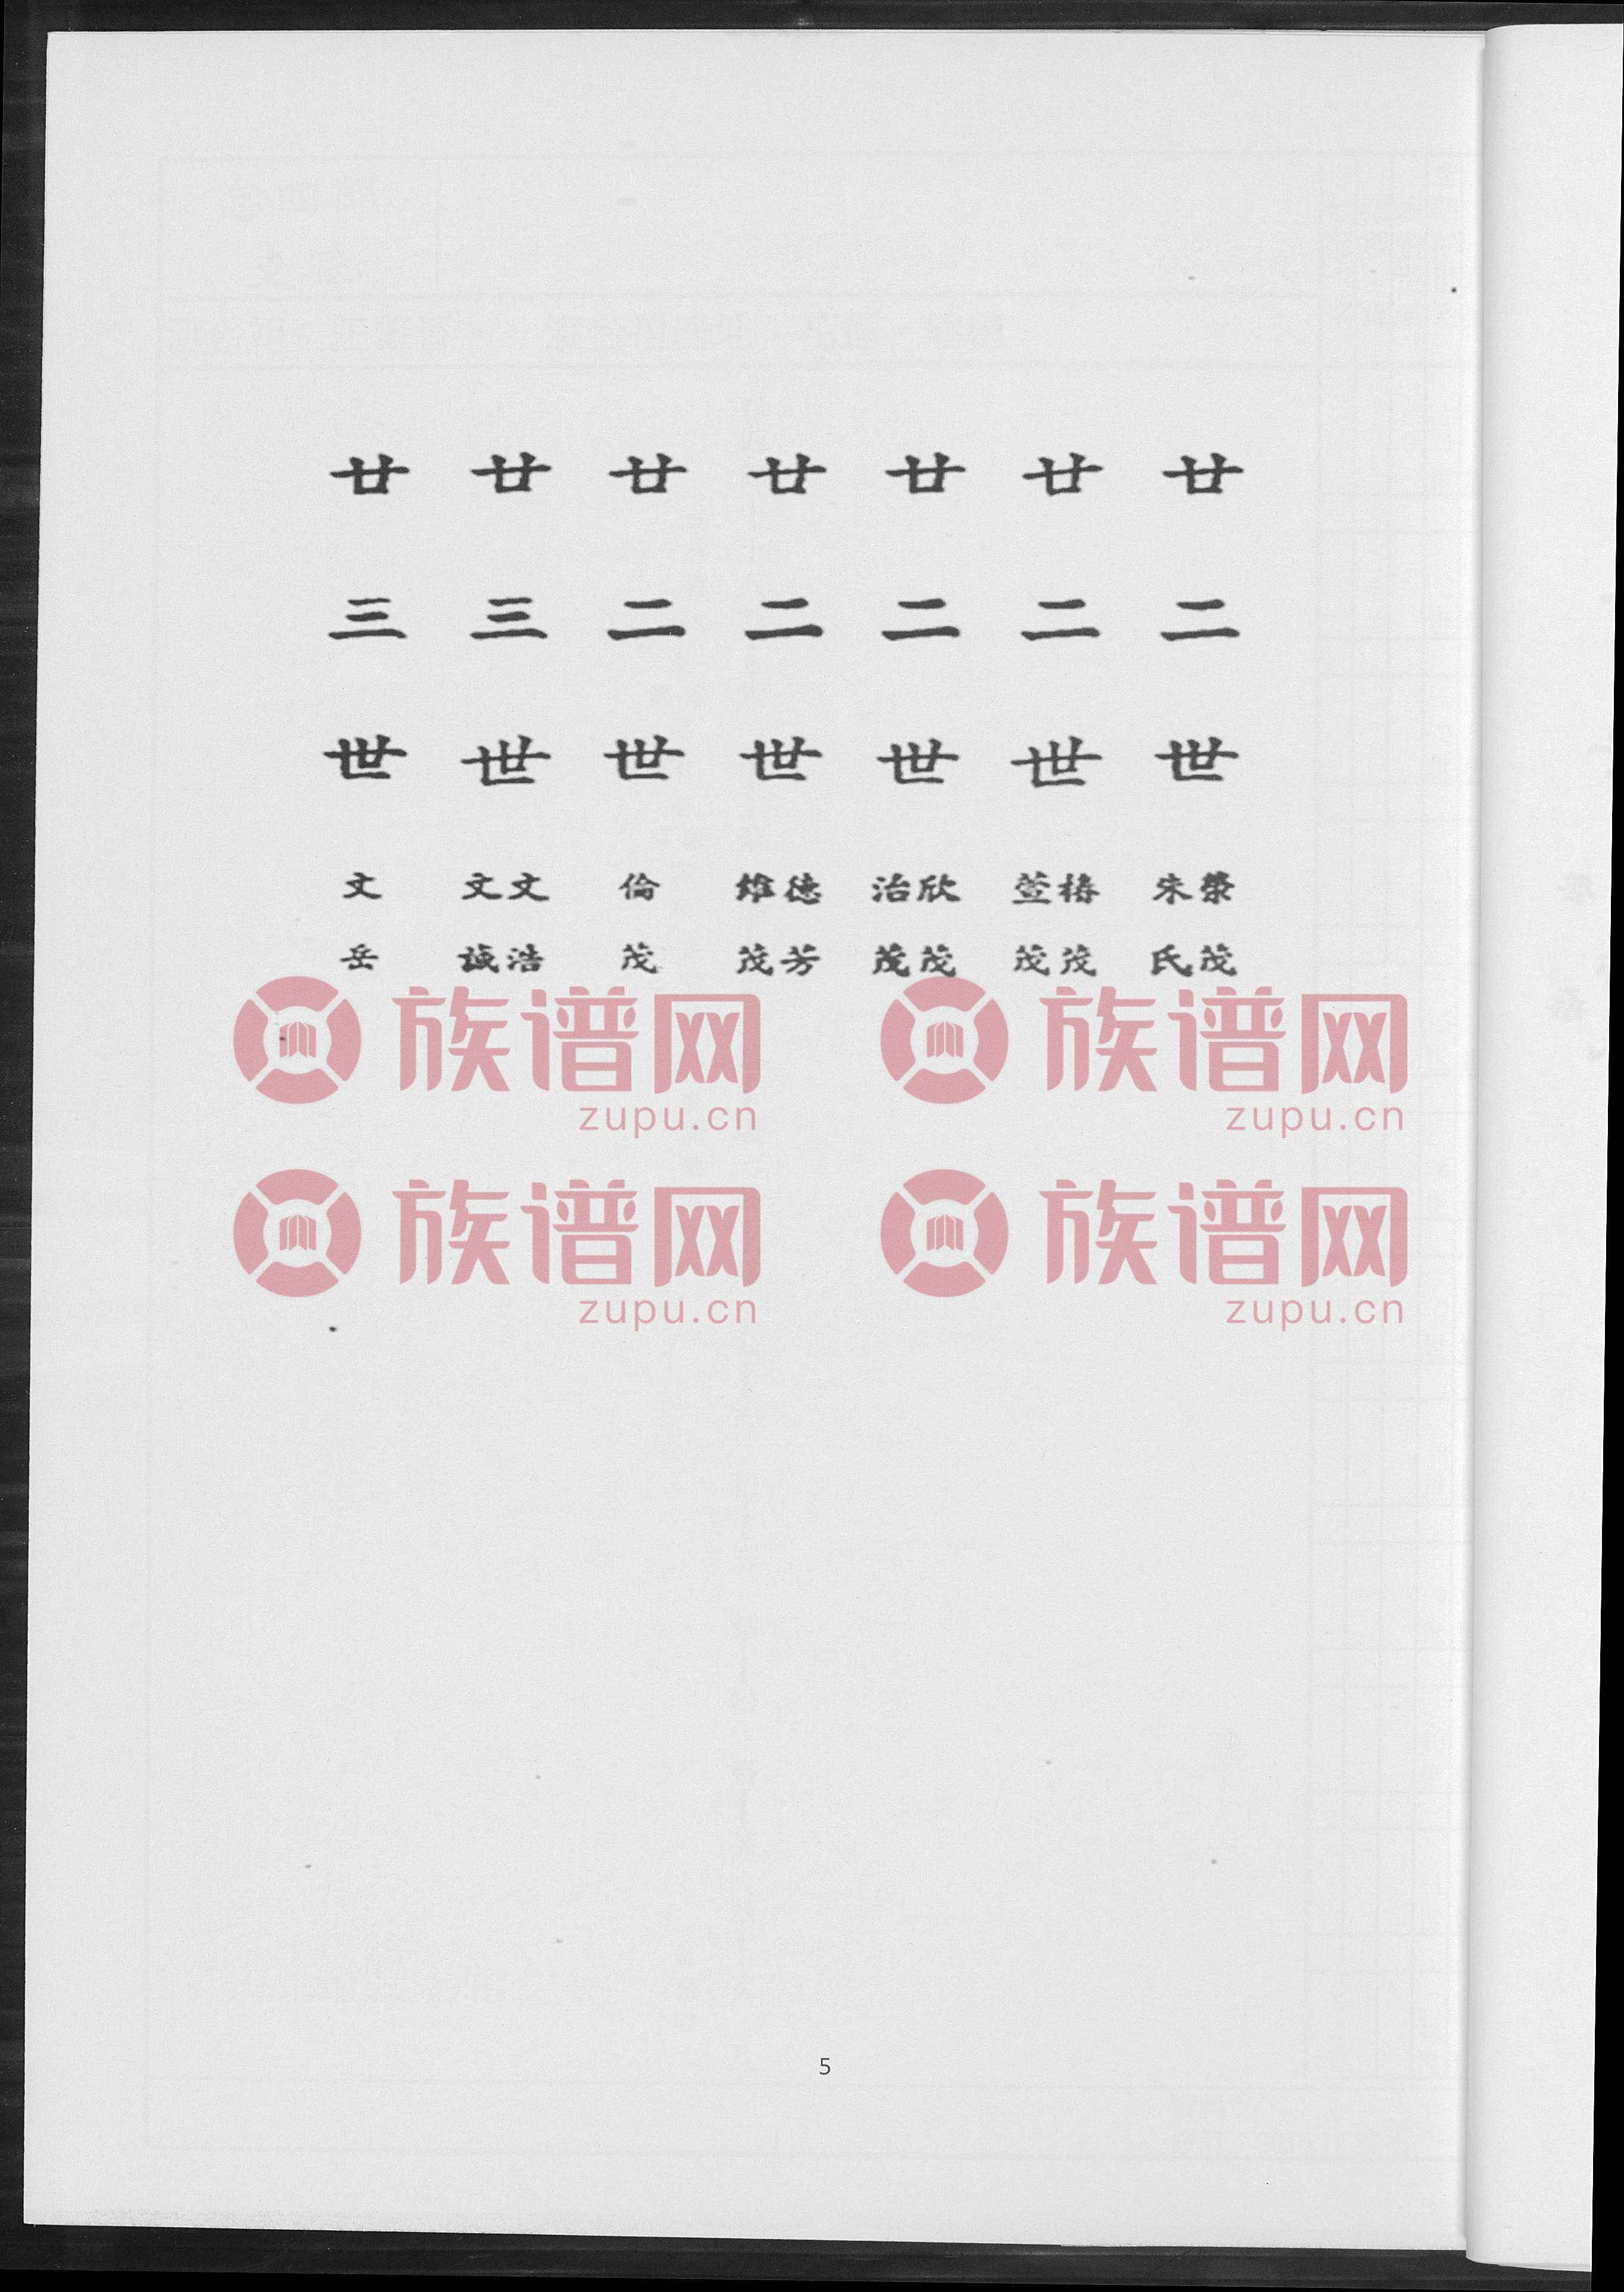 王氏族谱简录, 1, 1600-2012 - 王氏堂号字辈查阅 - 族谱网